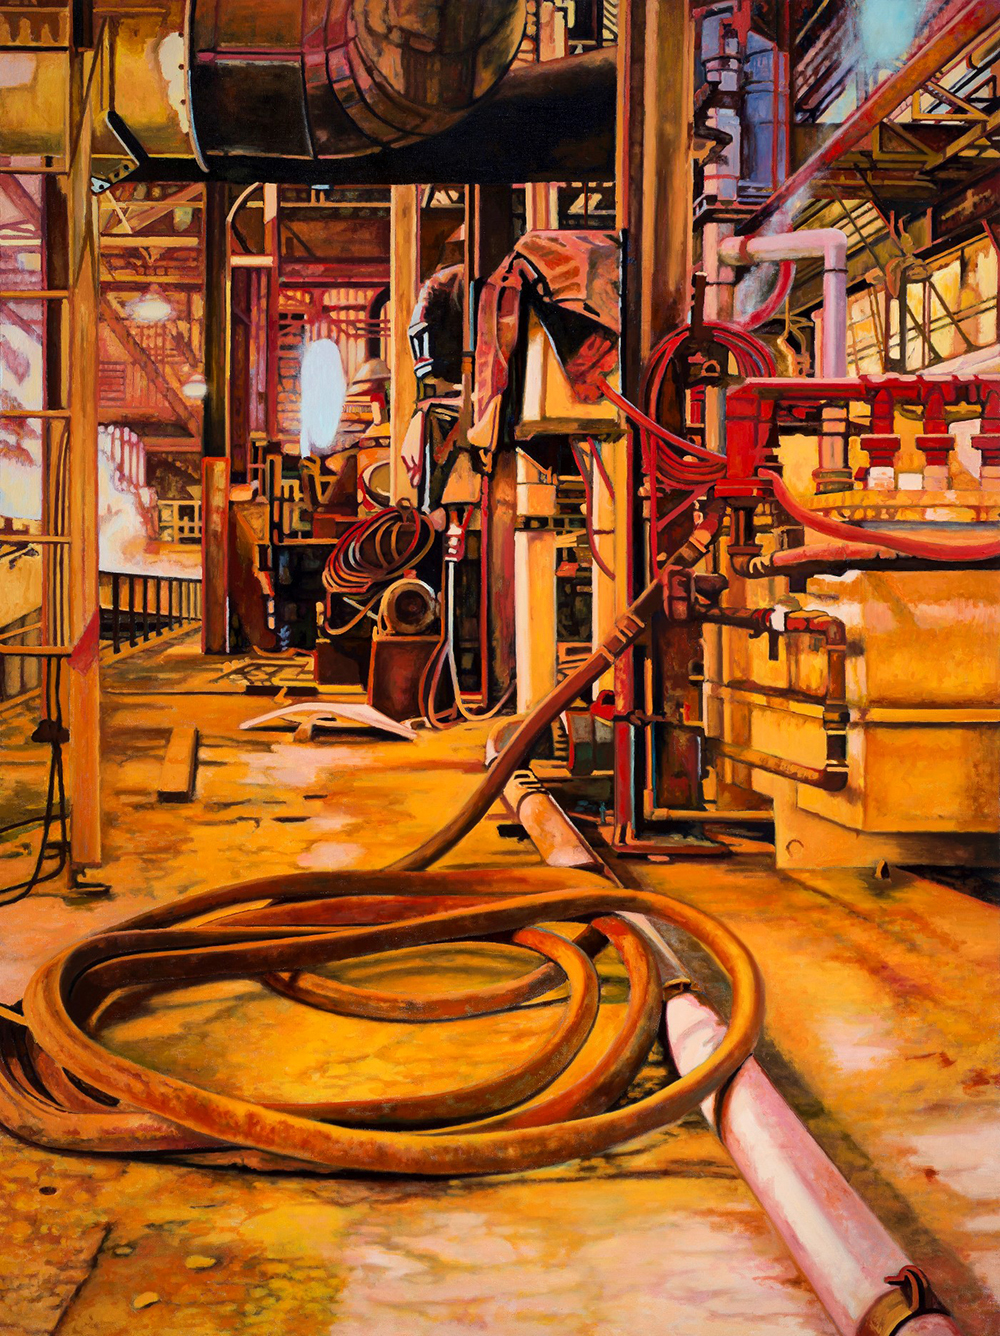 Morgan Craig, Ouroboros, 2013, oil on linen, 72 x 54"